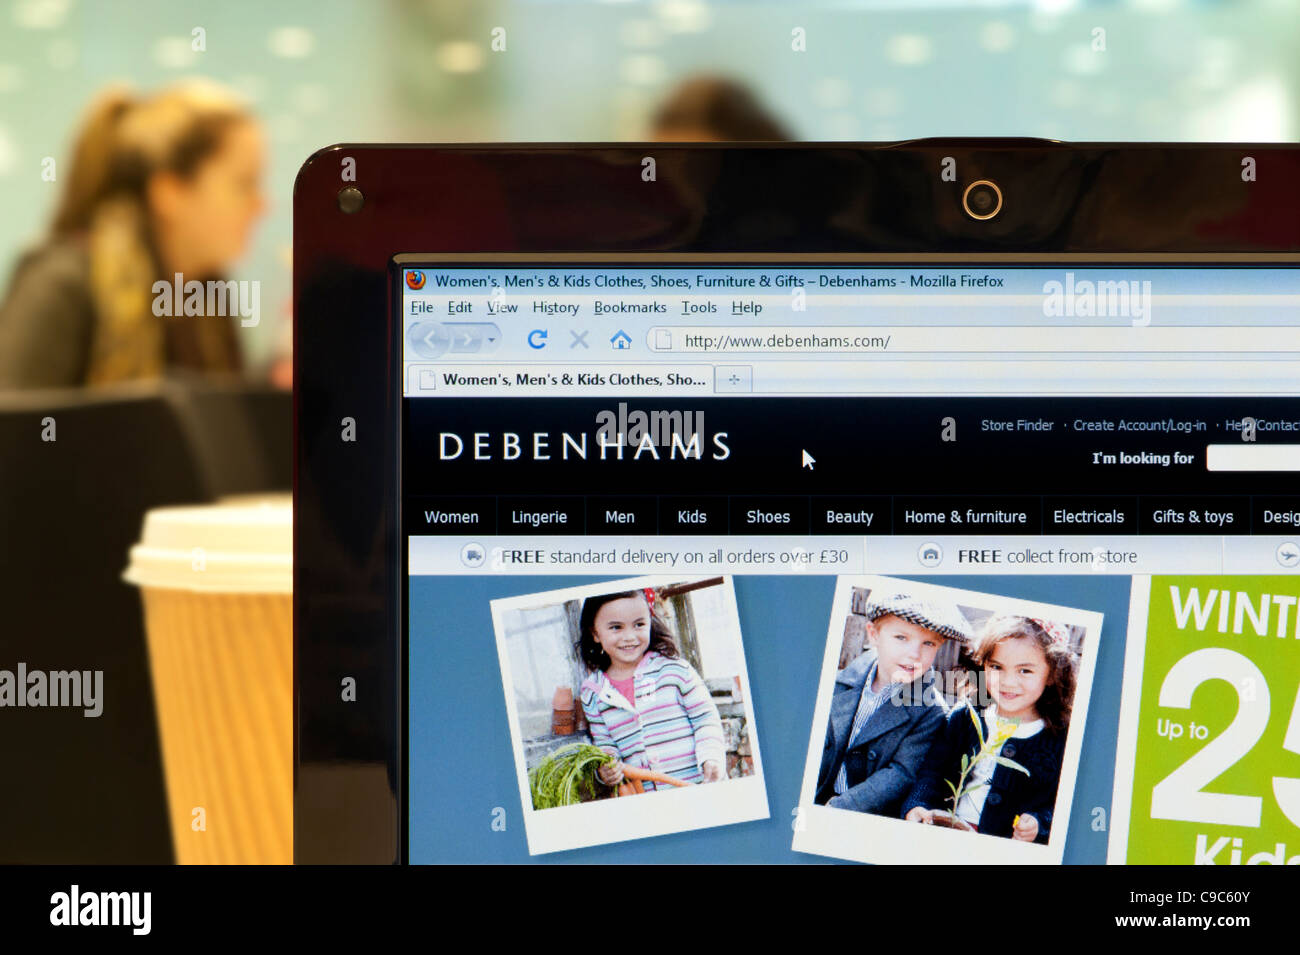 Die Debenhams Website erschossen in einem Coffee-Shop-Umfeld (nur zur redaktionellen Verwendung: print, TV, e-Book und redaktionelle Webseite). Stockfoto